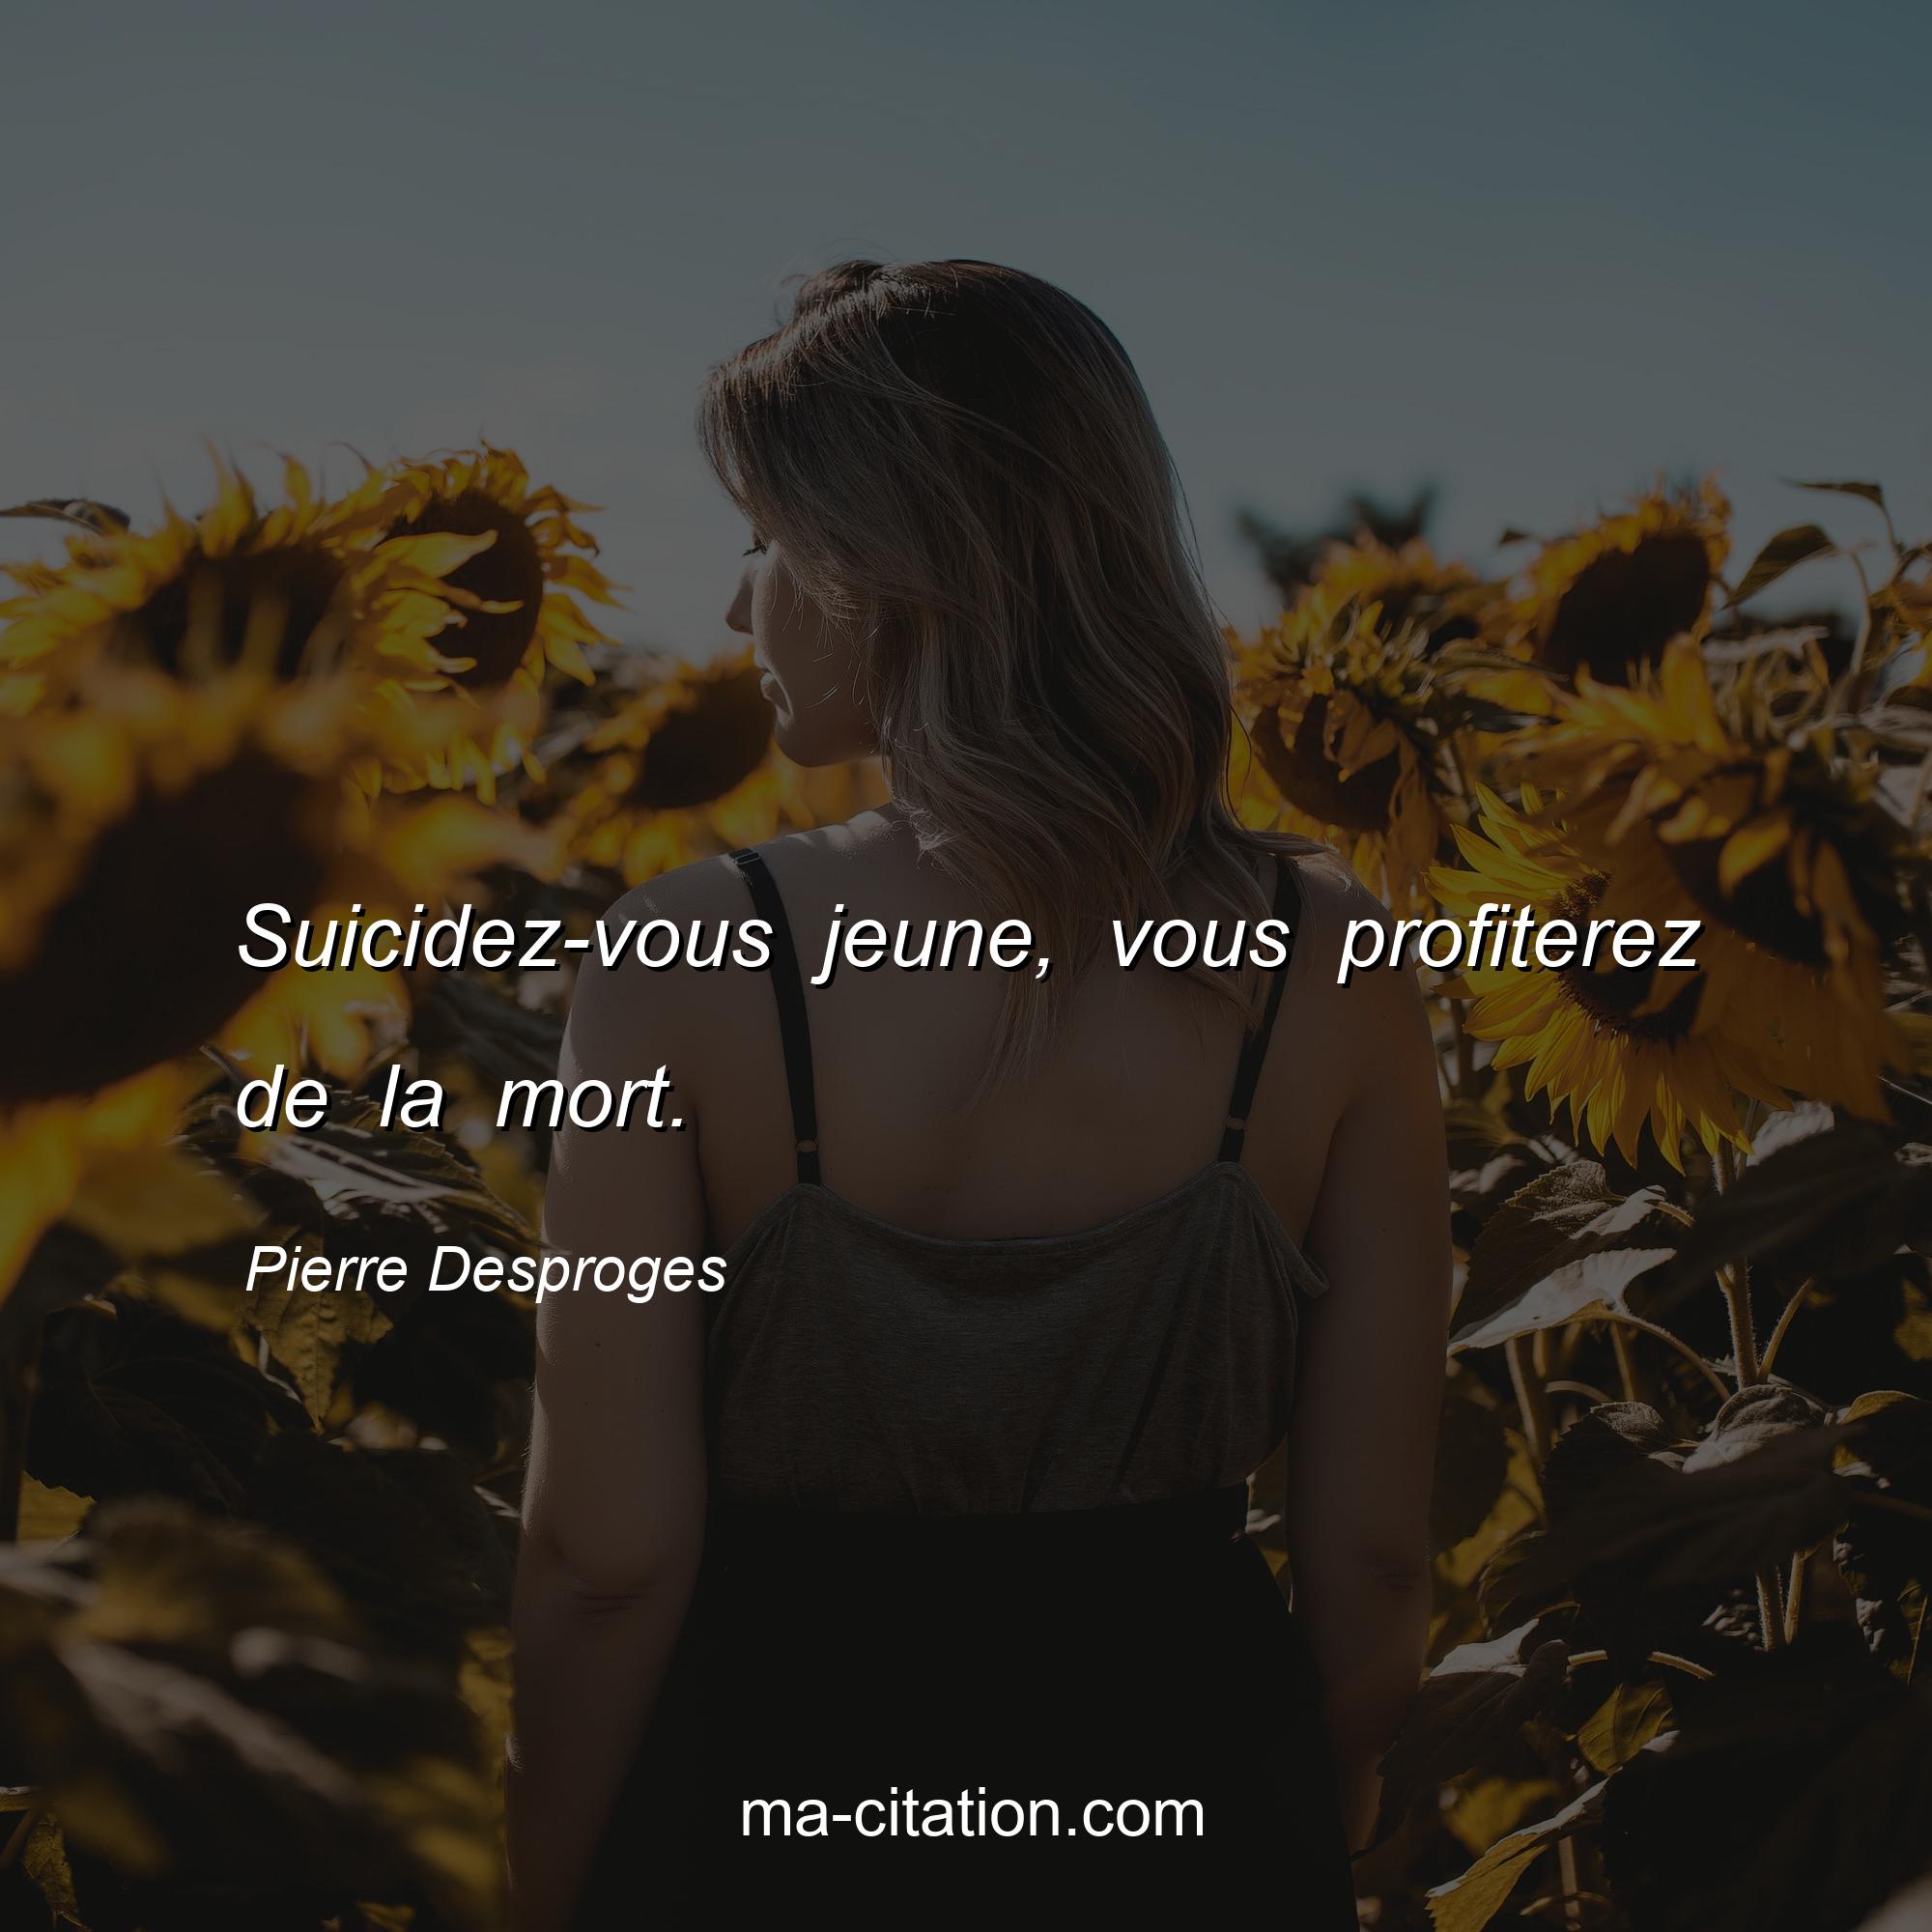 Pierre Desproges : Suicidez-vous jeune, vous profiterez de la mort.